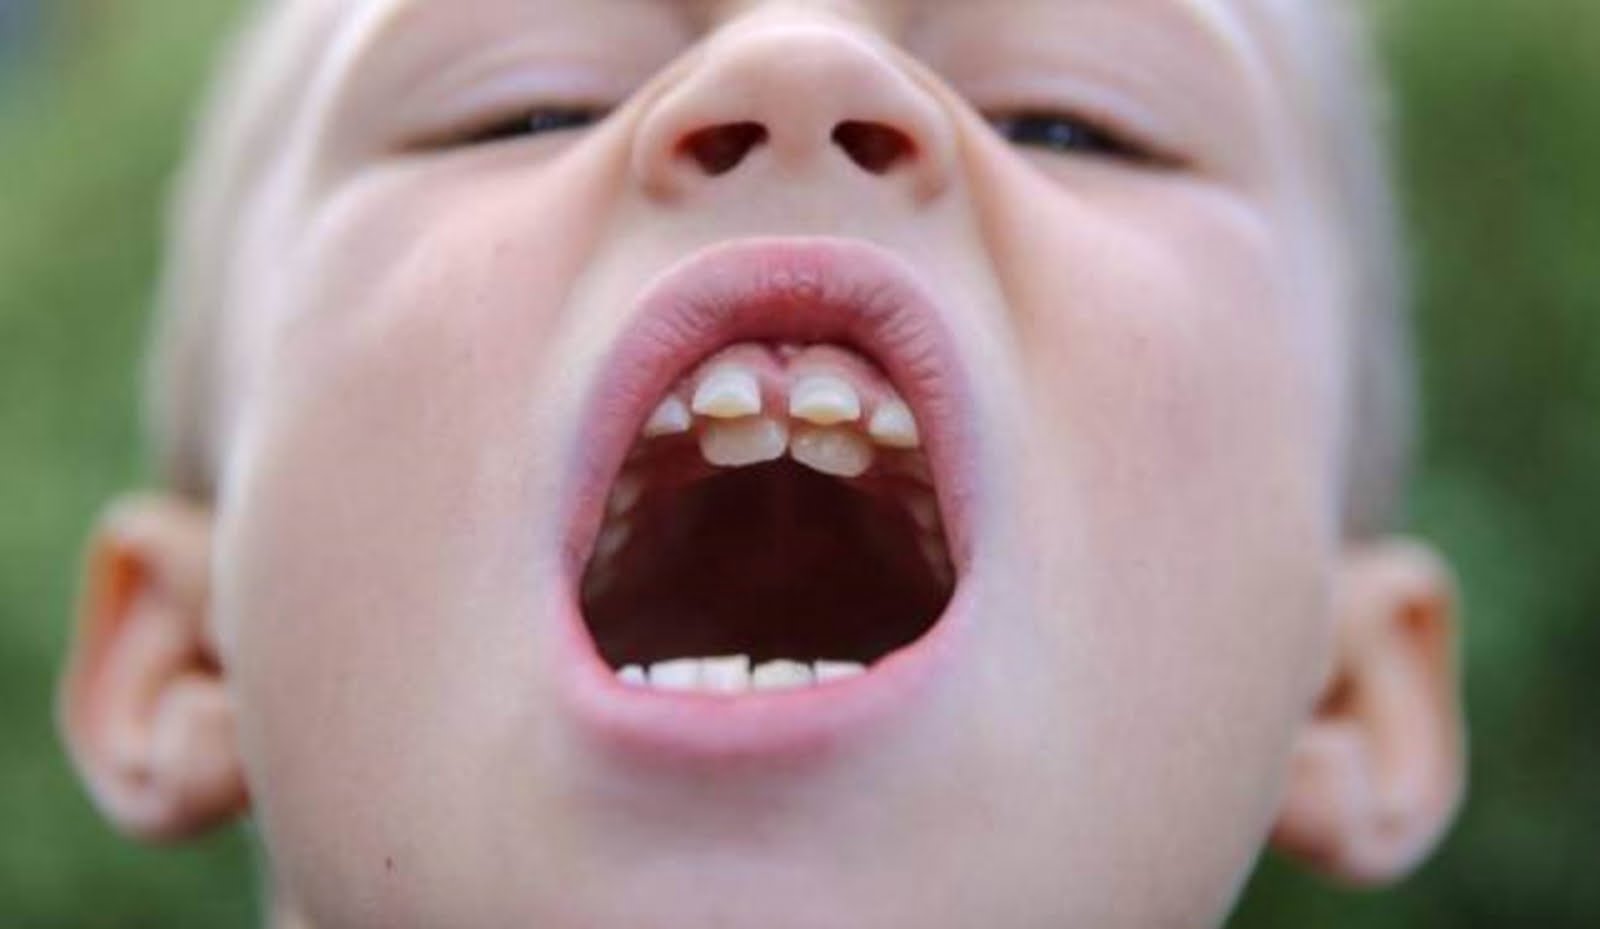 Răng cửa mọc lệch ở trẻ em khắc phục như thế nào?